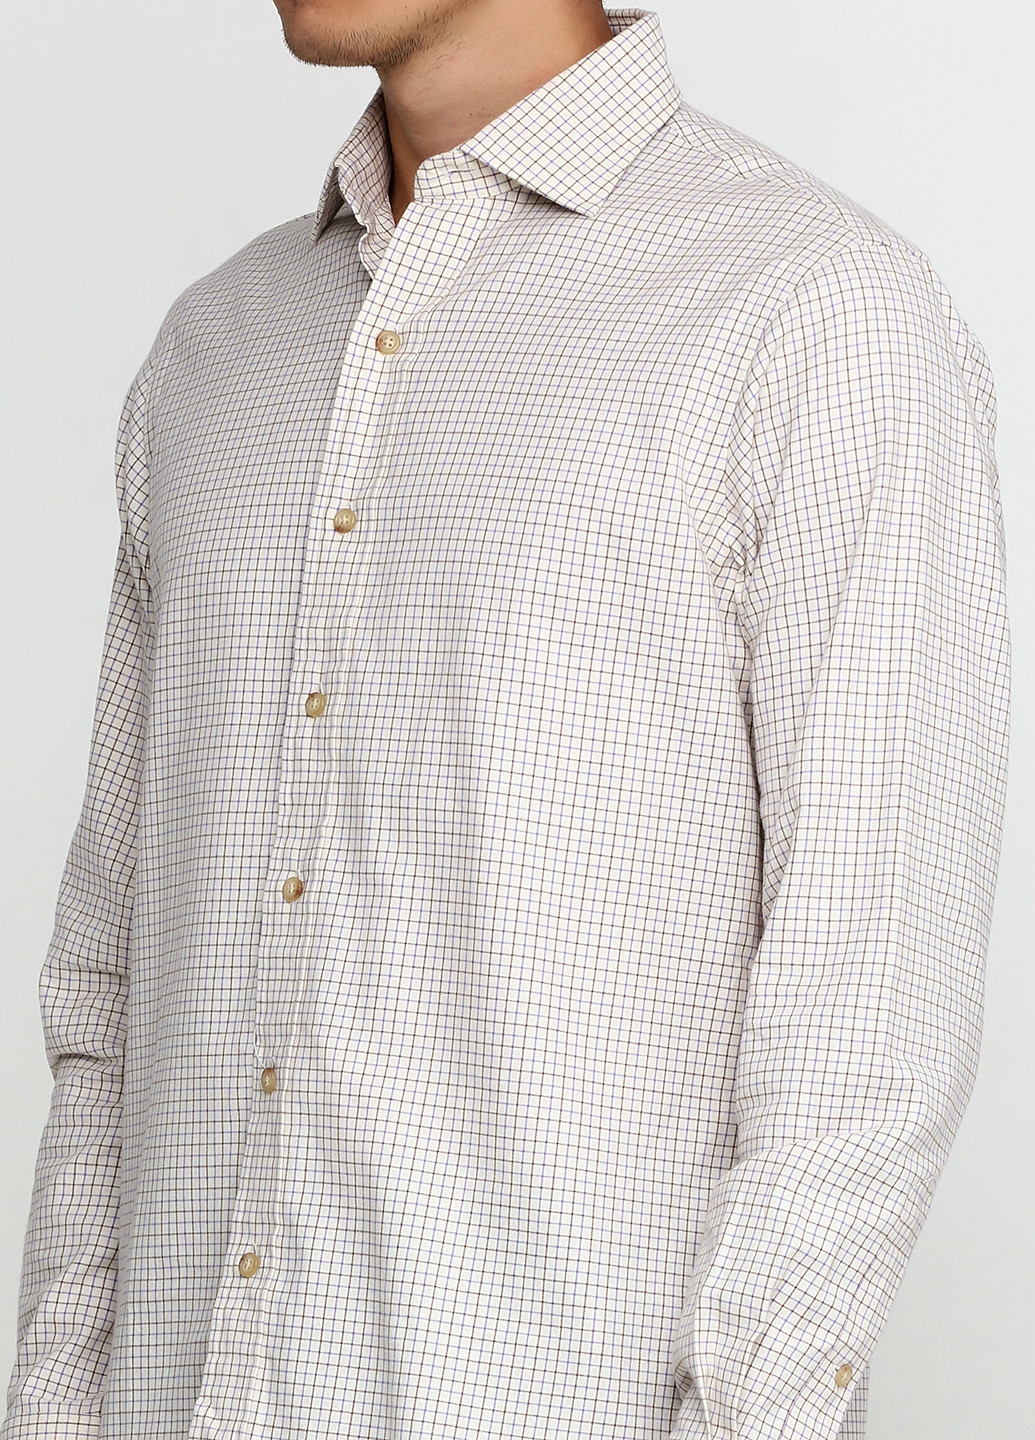 Кремовая кэжуал рубашка в клетку Ralph Lauren с длинным рукавом